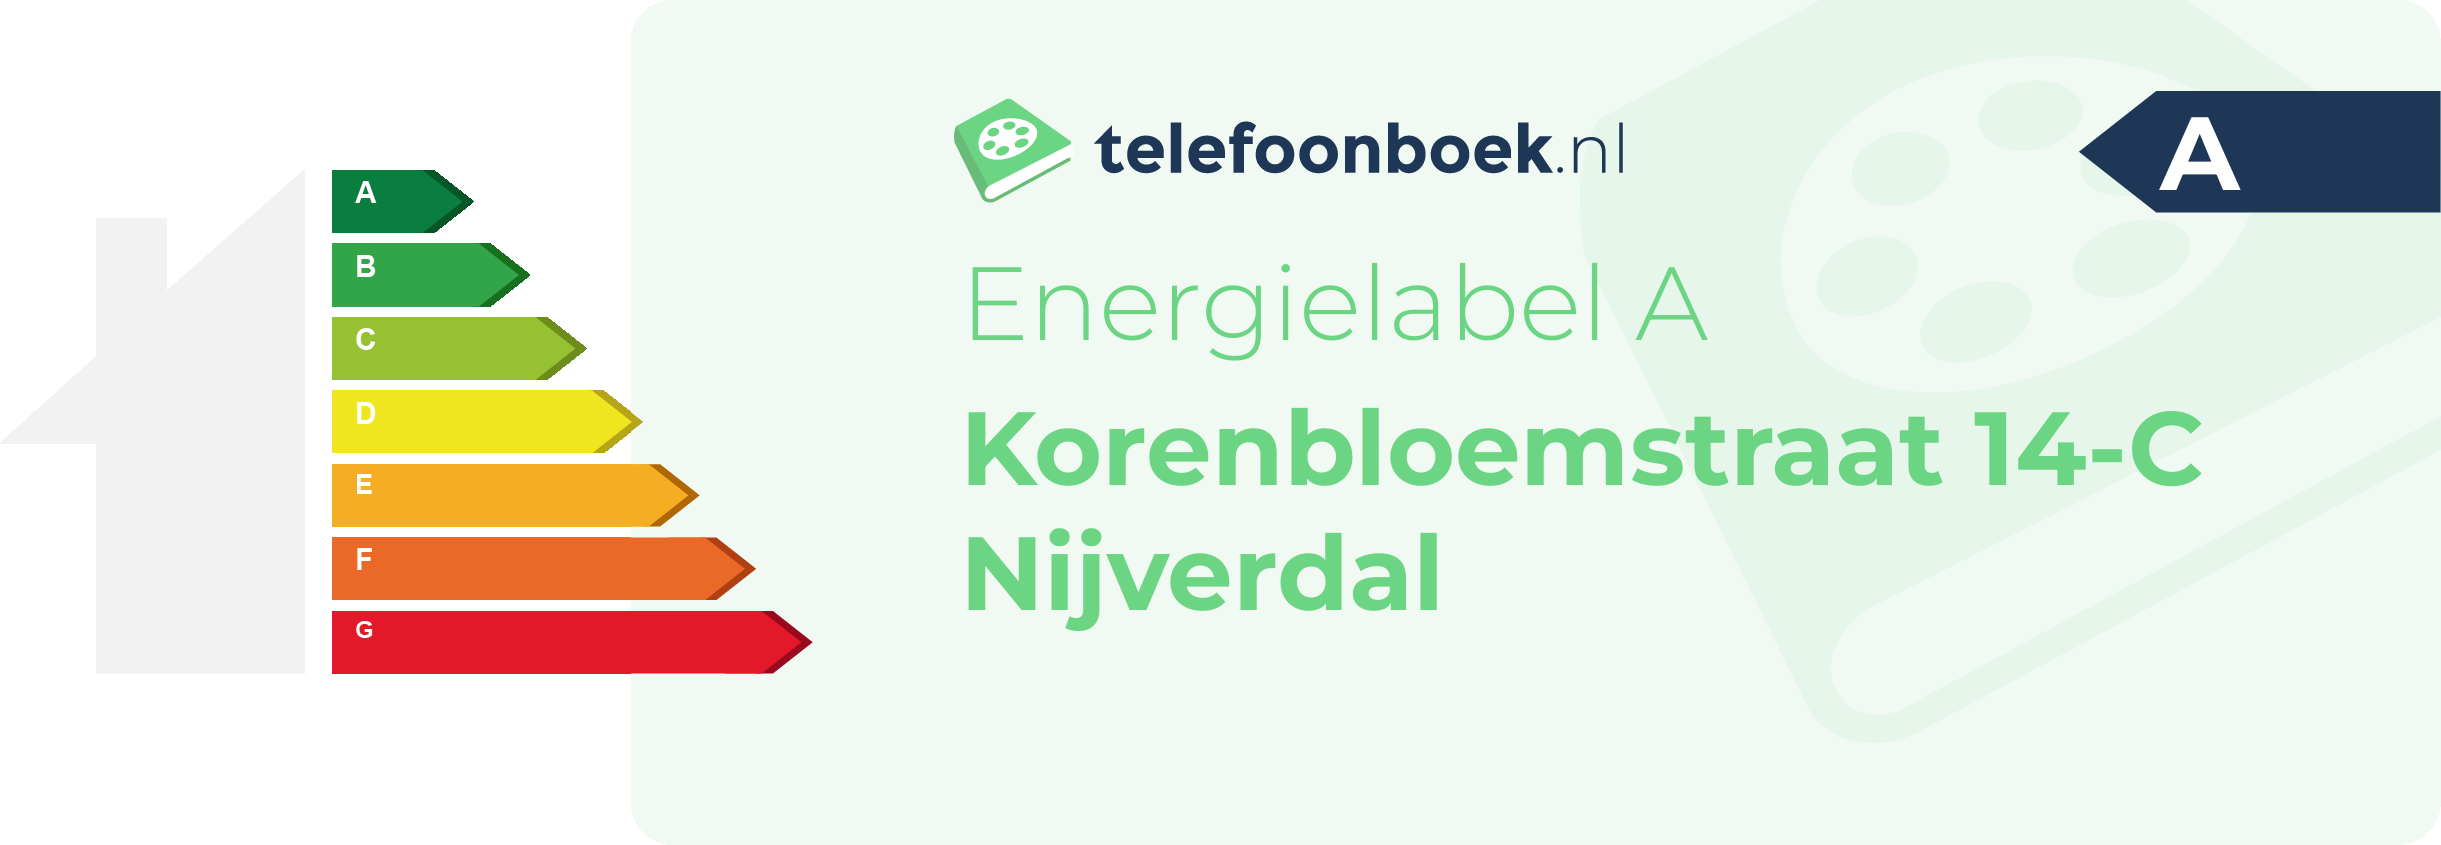 Energielabel Korenbloemstraat 14-C Nijverdal